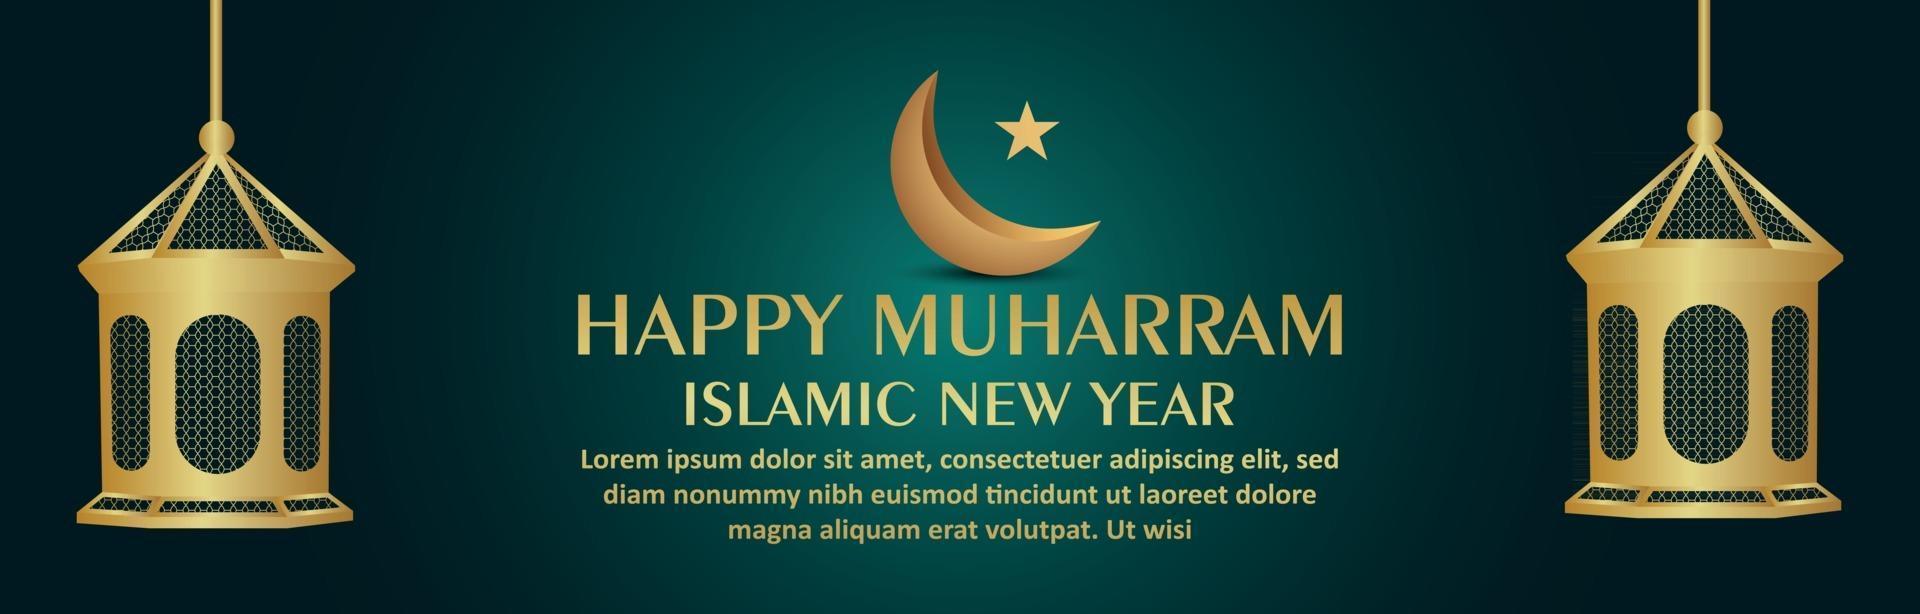 bannière de célébration du nouvel an islamique joyeux muharram avec lanterne dorée islamique et lune vecteur